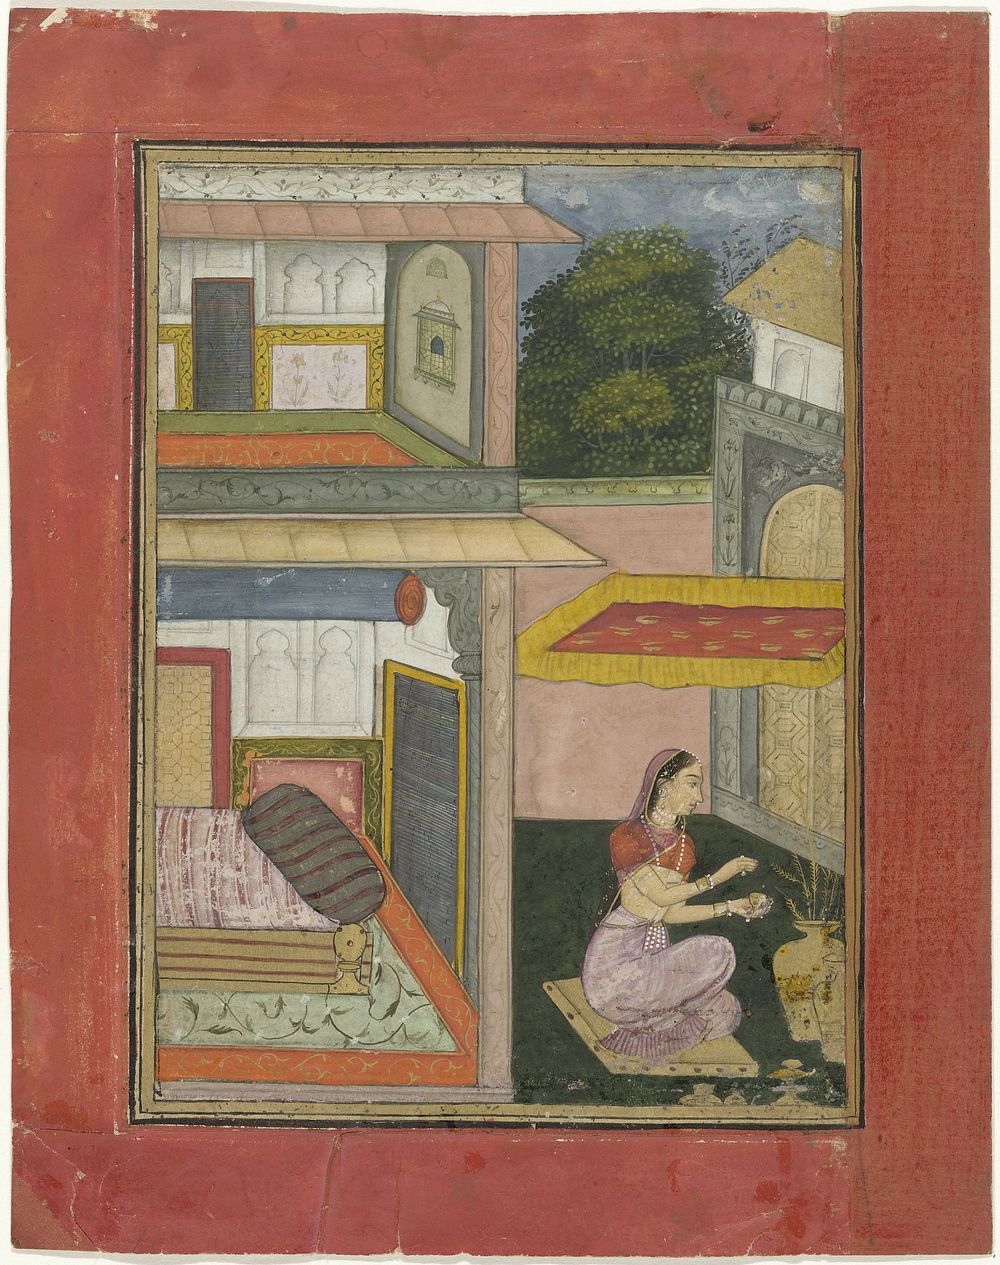 Gunakari Ragini, vrouw zittend in een hof van een paleis (1675 - 1700) by Rukn ud din